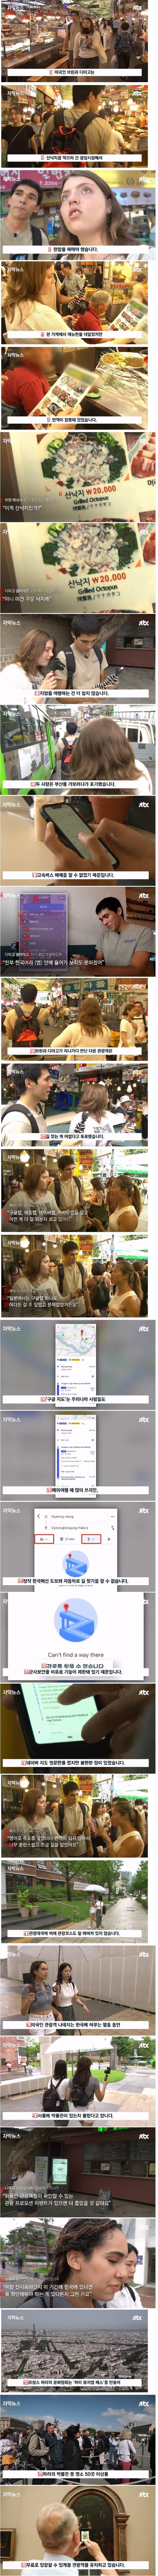 ニュースに出た外国人にとって韓国旅行が大変な理由